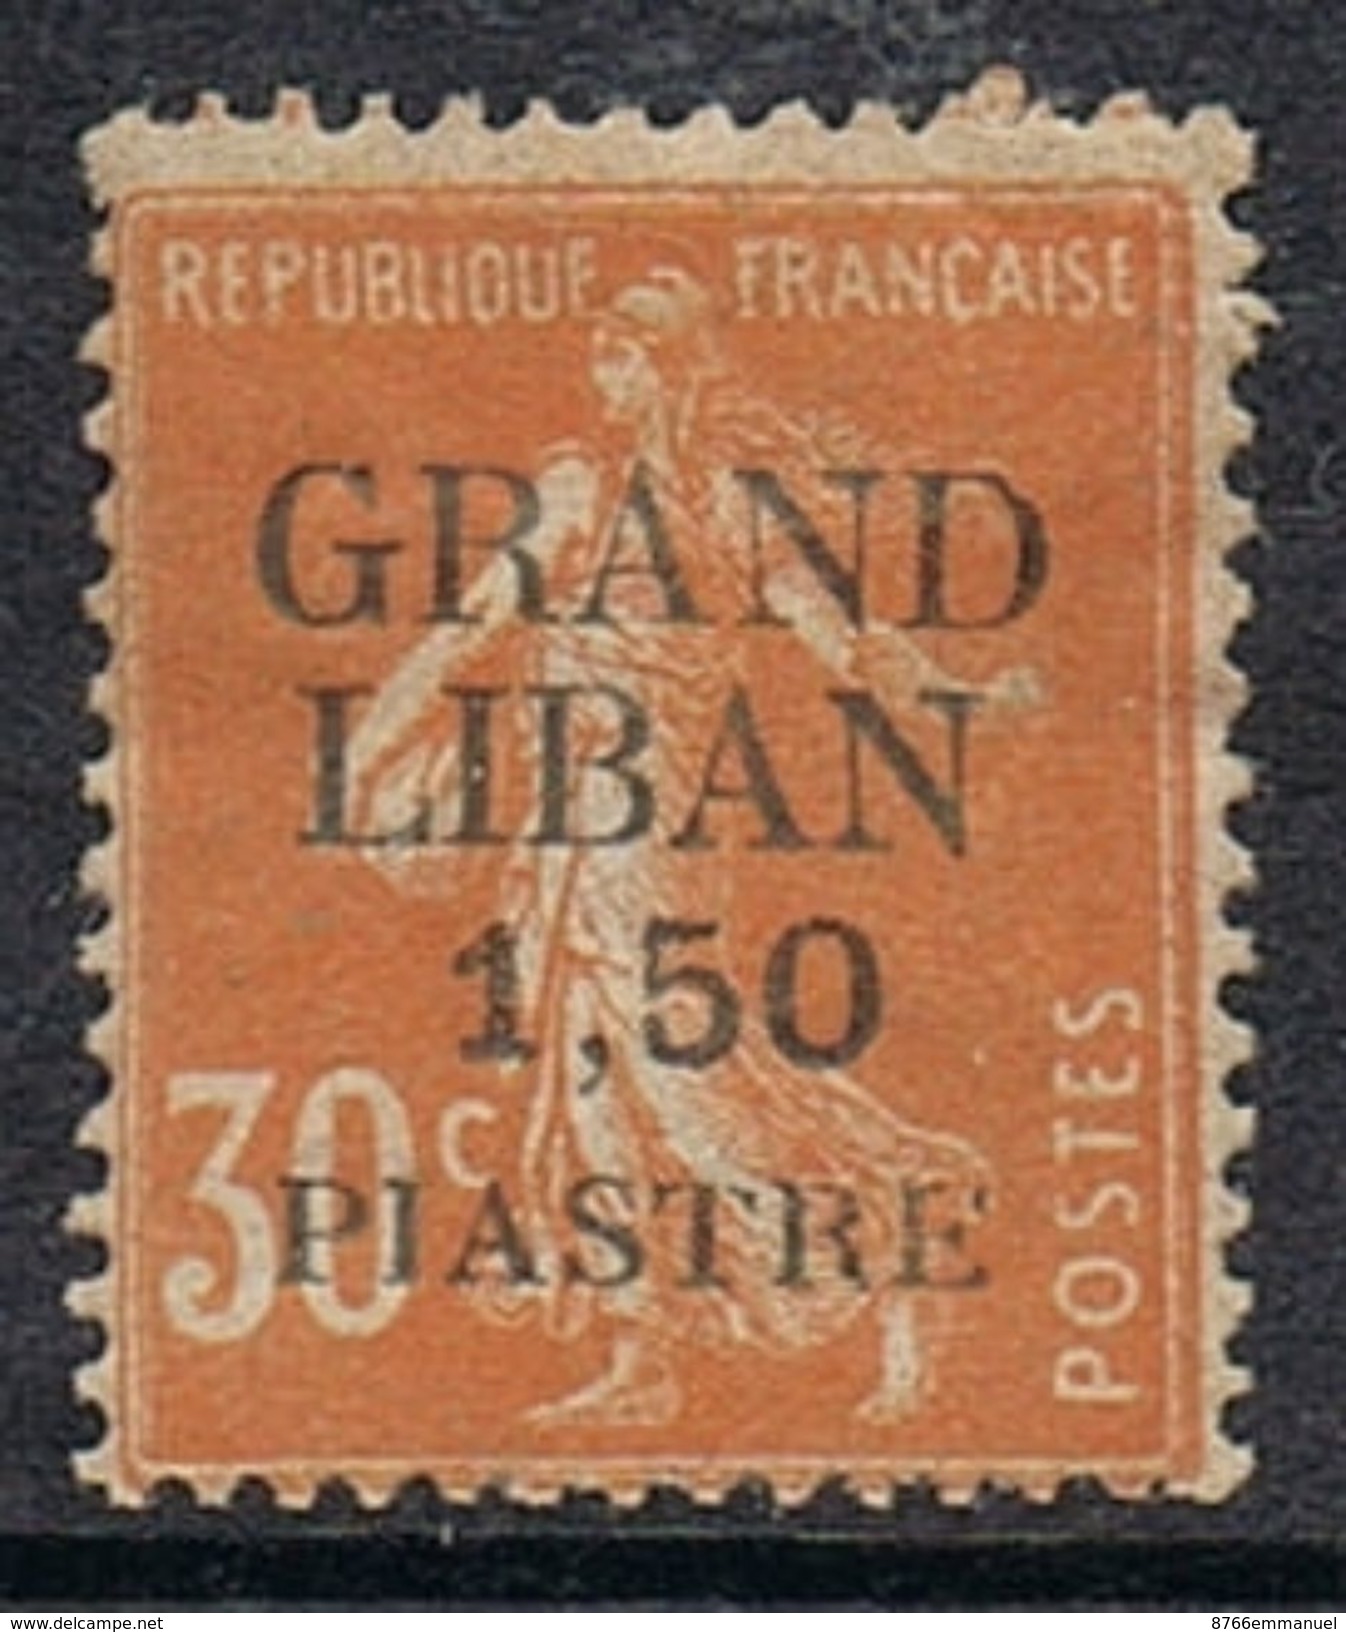 GRAND LIBAN N°7 N* - Unused Stamps